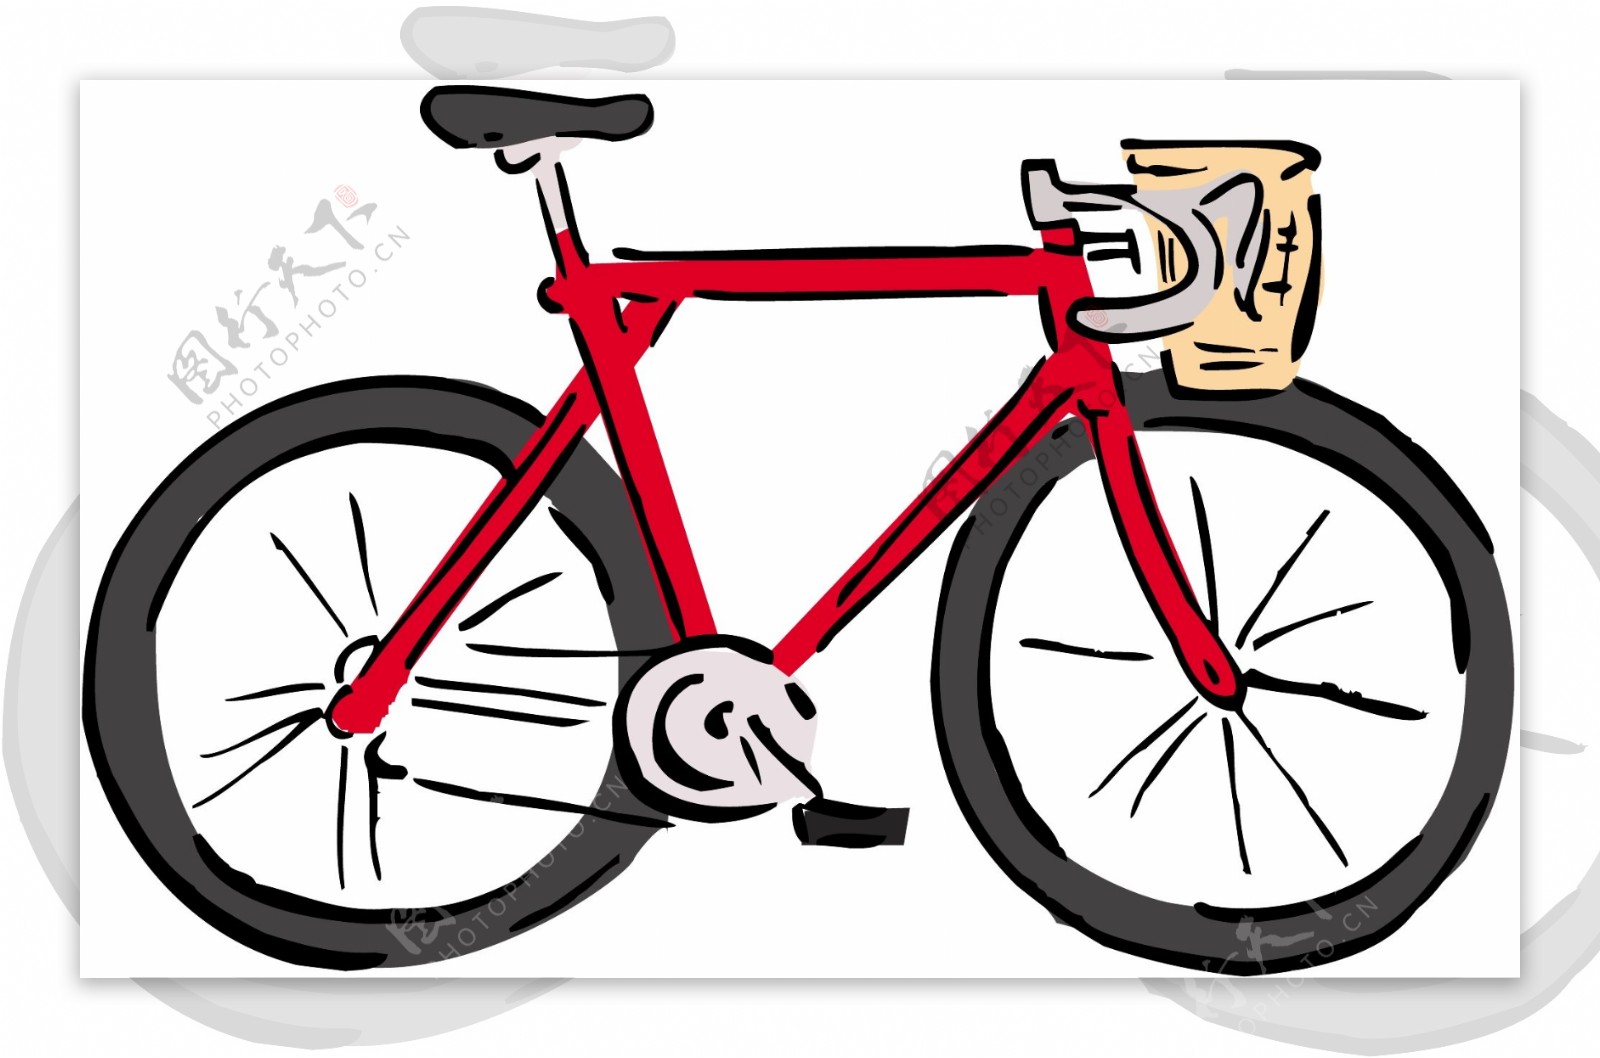 自行车交通工具矢量素材EPS格式0062